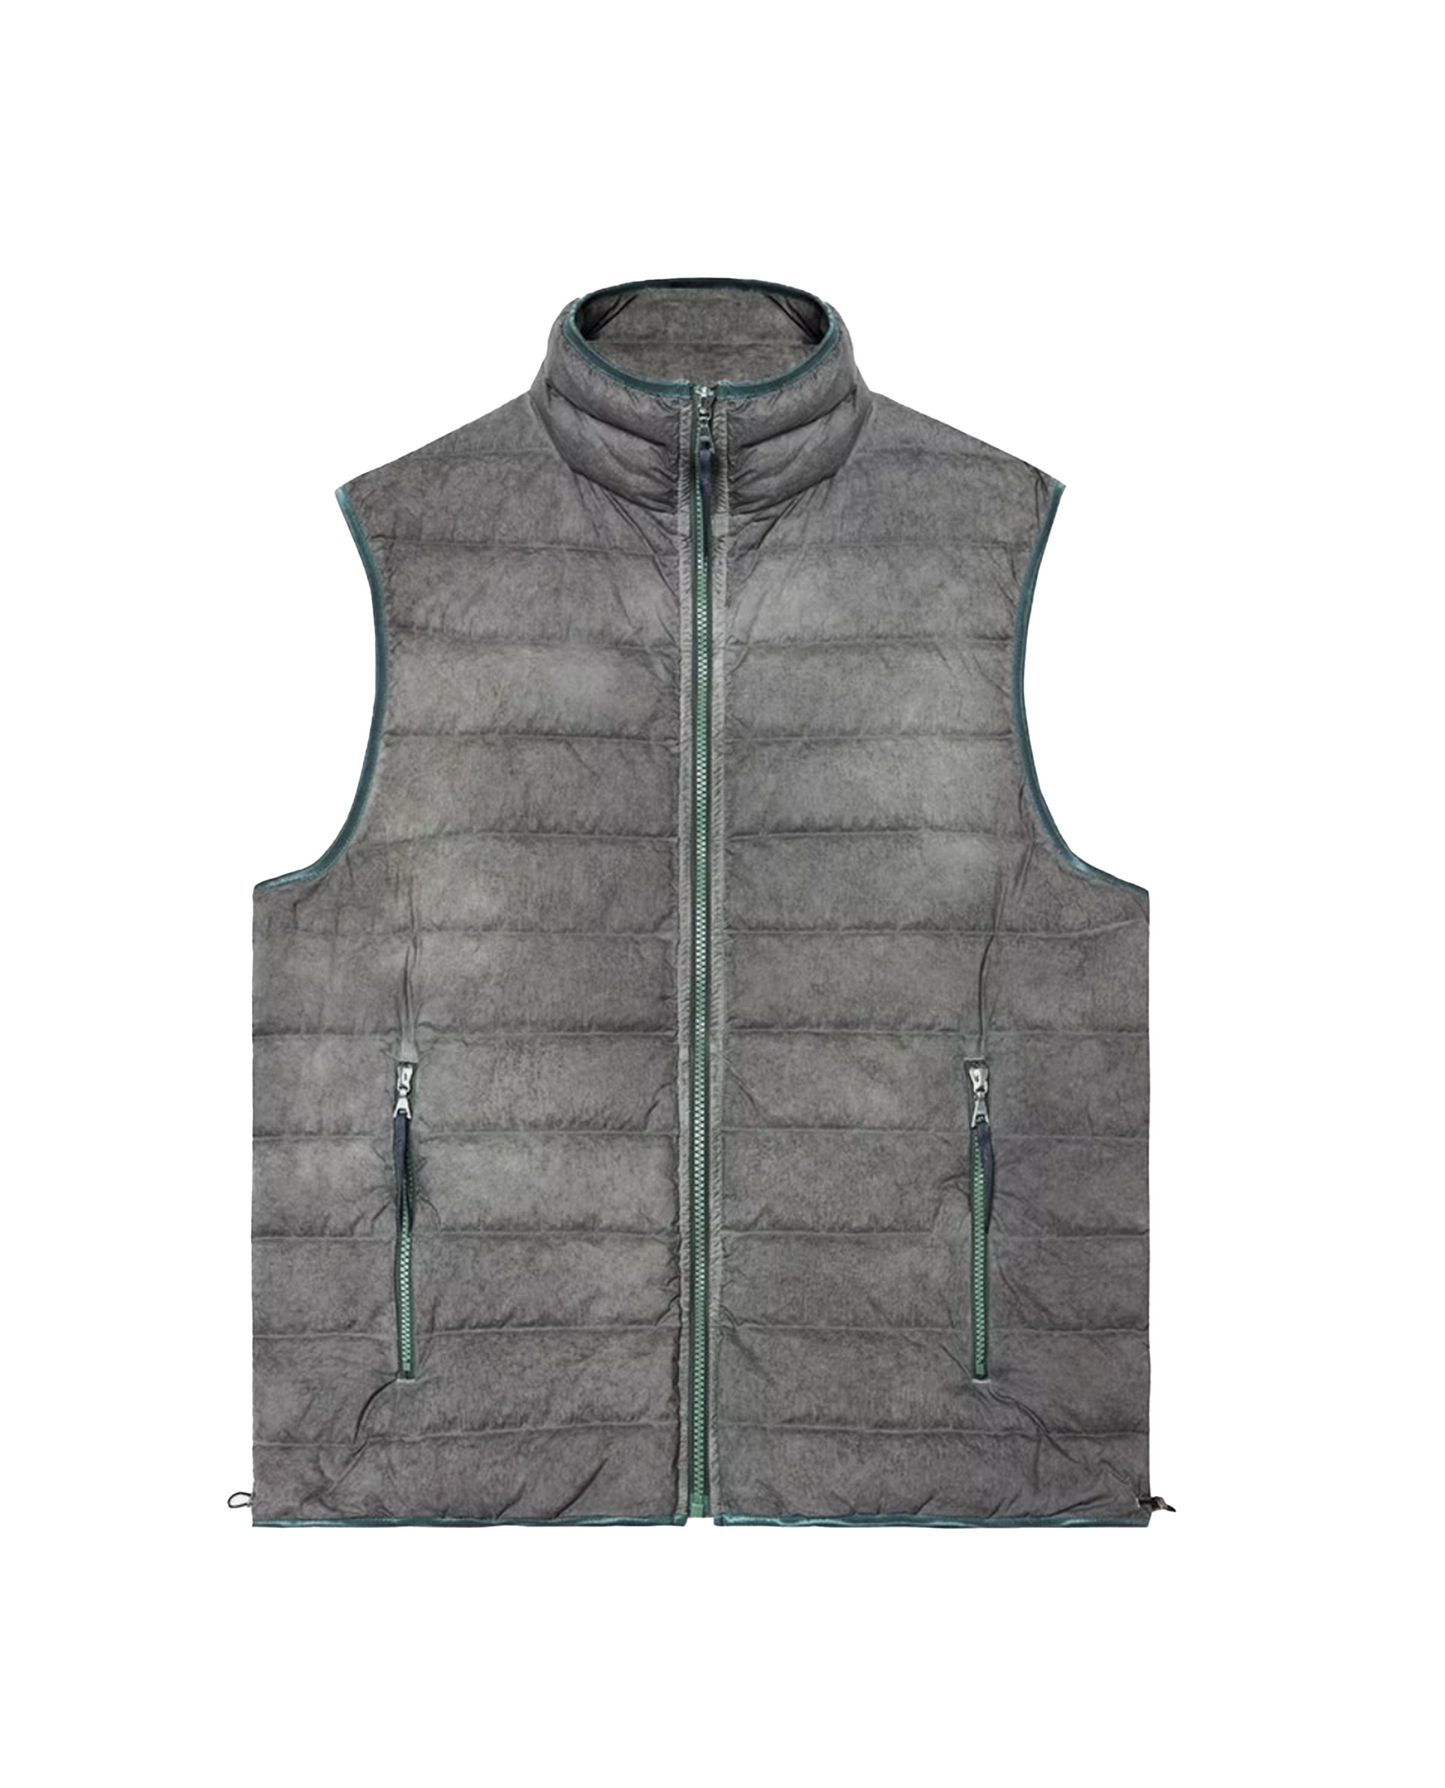 John Elliott New Polar Fleece Parka Moonlight Camo Jacquard Jacket 2 Medium